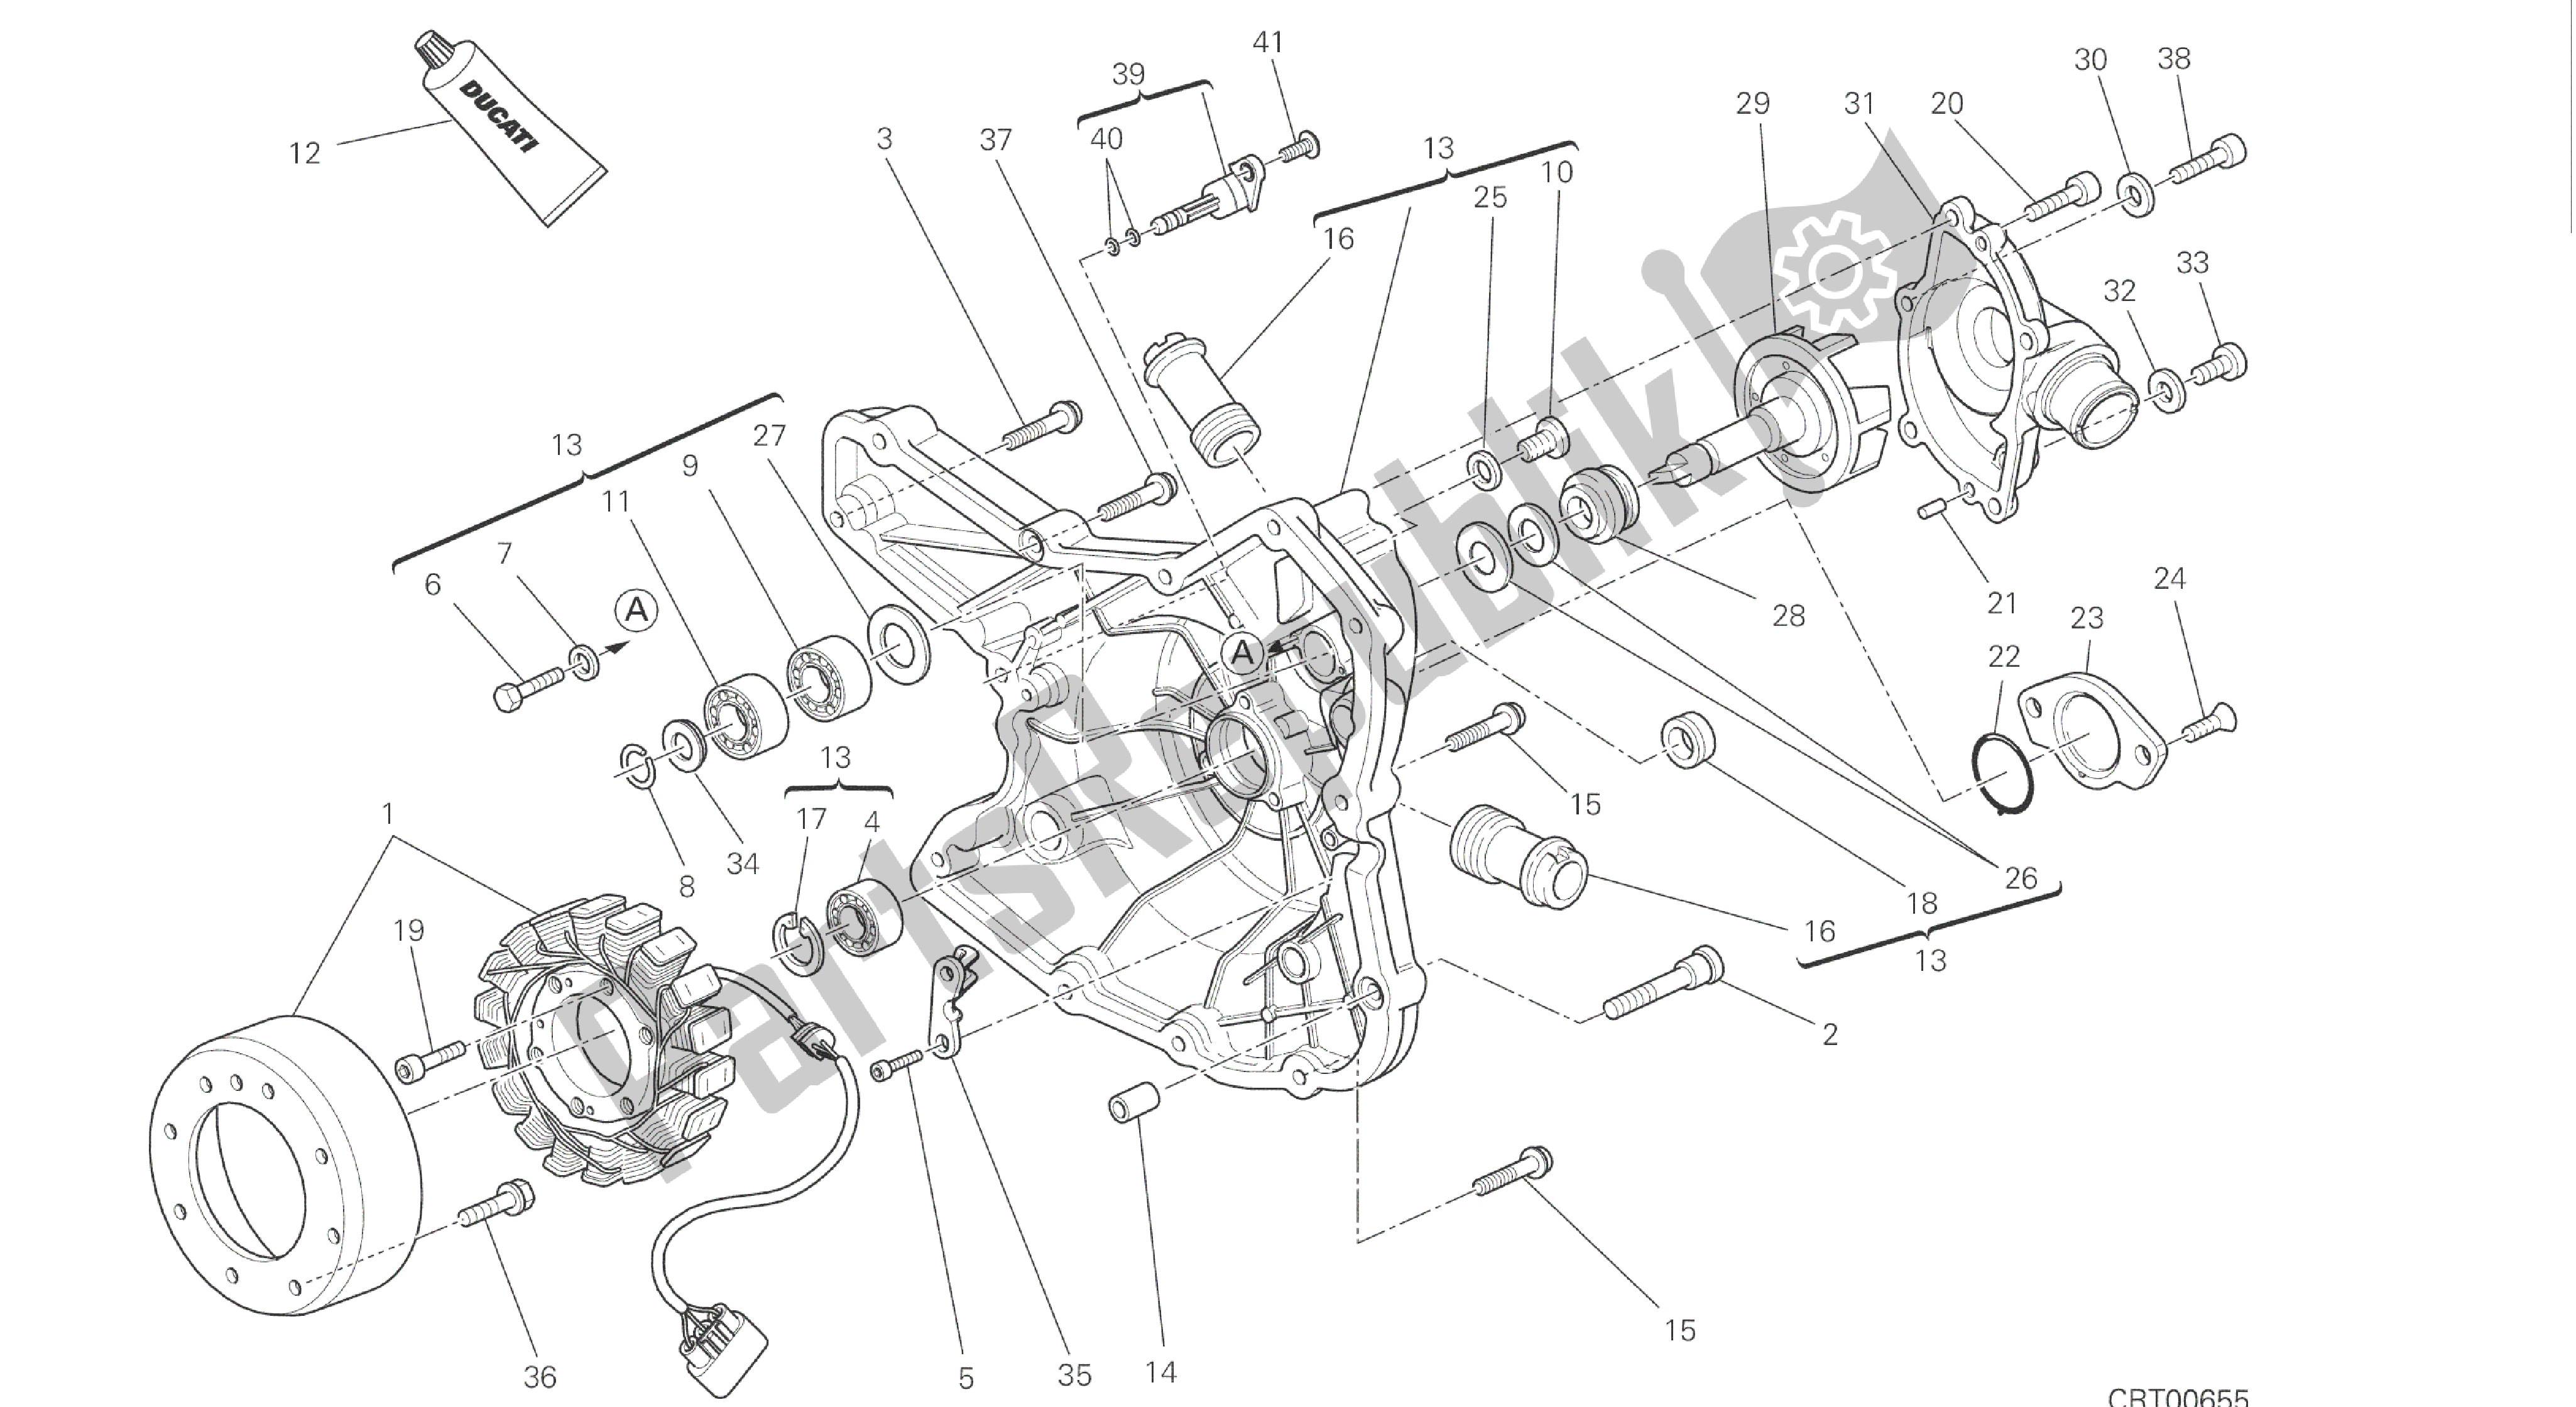 Toutes les pièces pour le Dessin 011 - Capot Du Générateur [mod: Hym-sp; Xst: Aus, Eur, Fra, Jap] Groupe Moteur du Ducati Hypermotard SP 821 2015